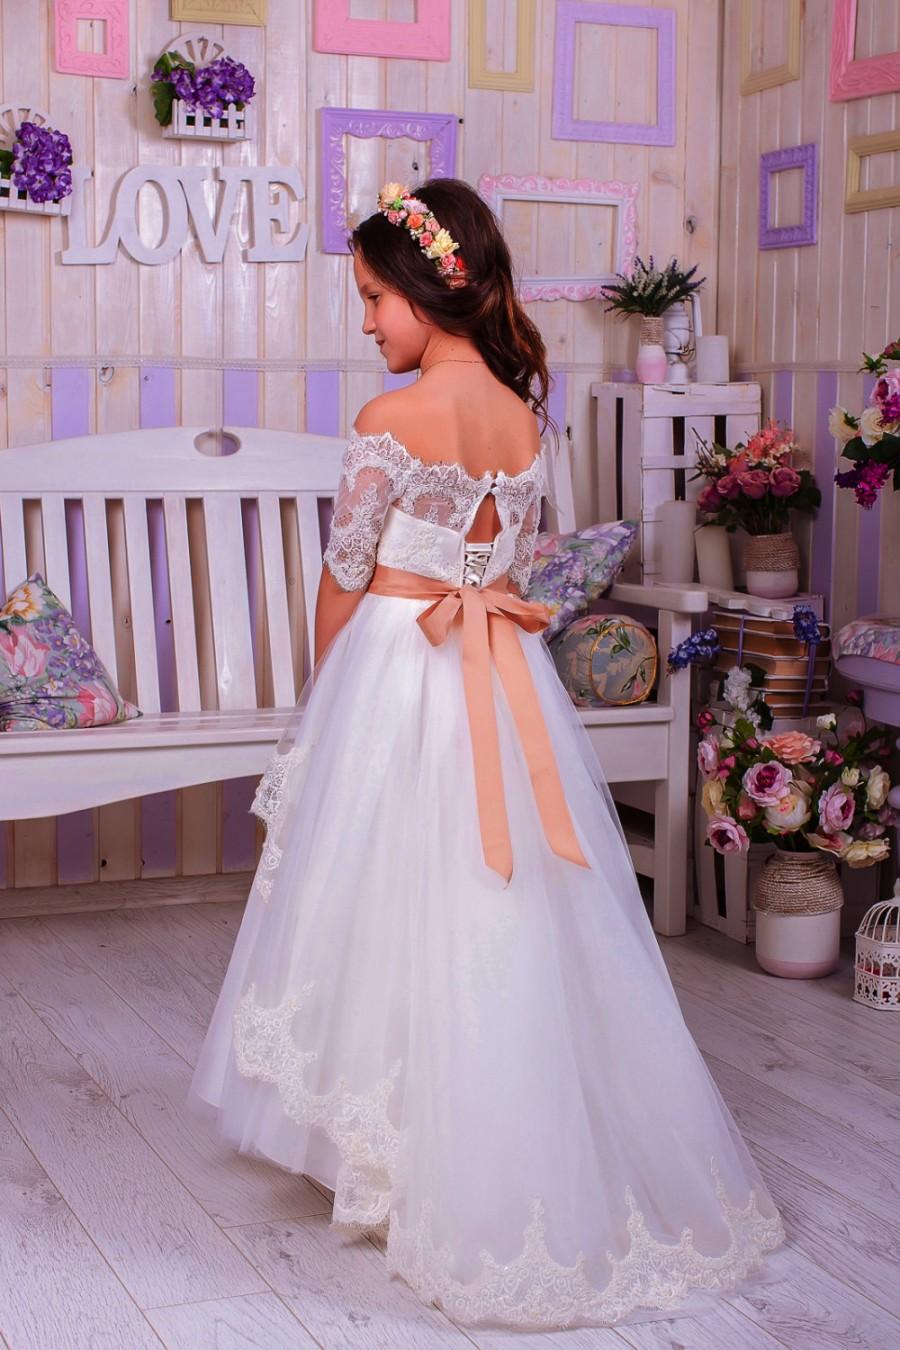 زفاف - Ivory Lace Flower Girl Dress,Flower Girl Dress,Wedding Party Dress,Baby Dress, Rustic Girl Dress,White Girls Dresses,Ivory Flower Girl Dress